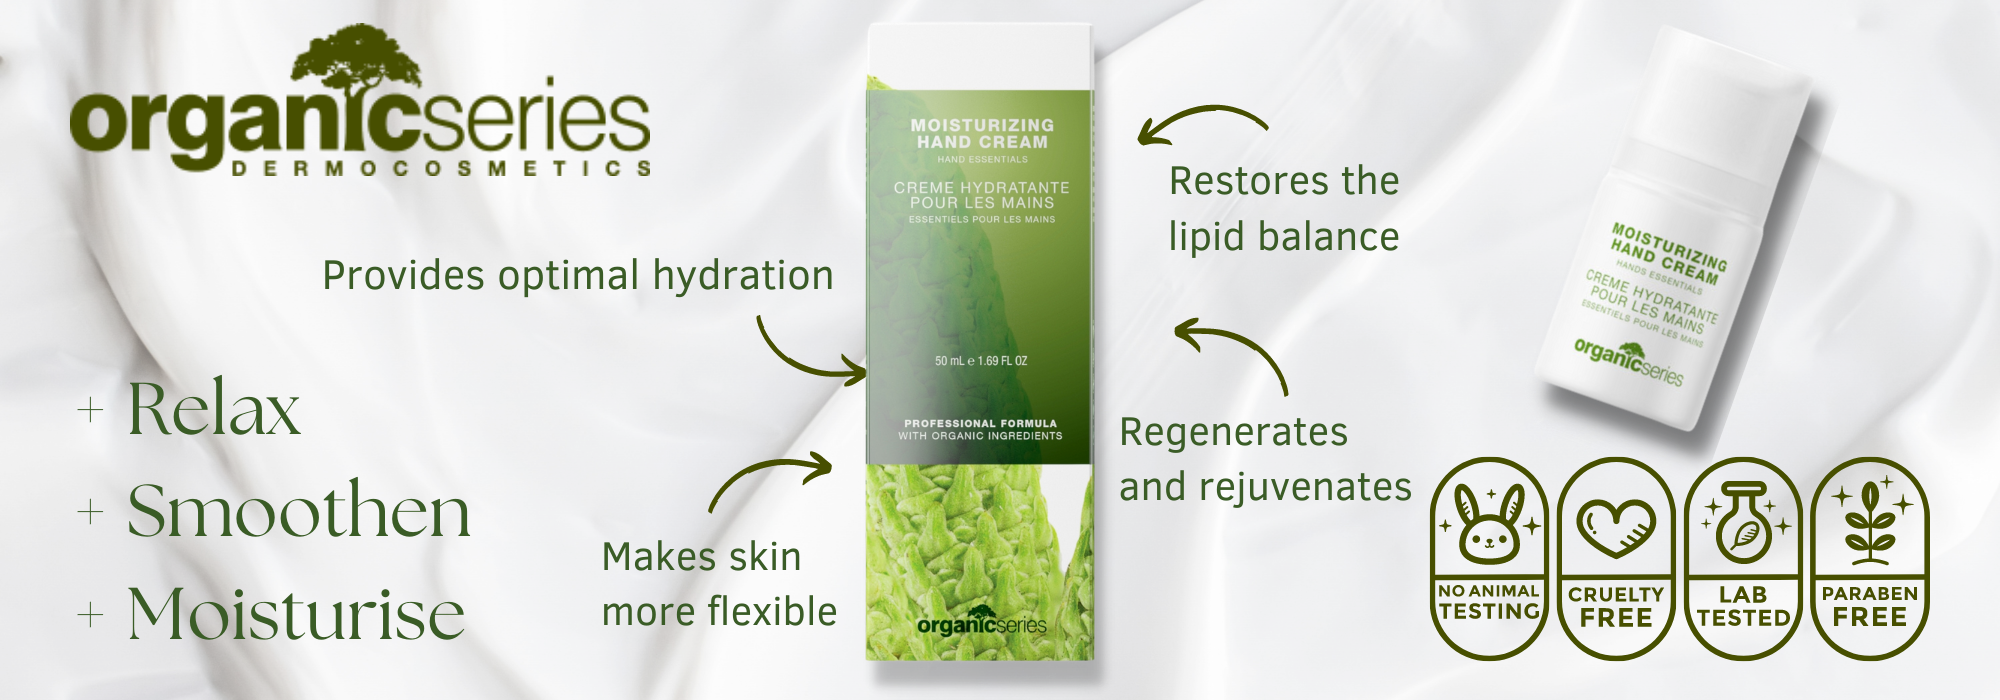 moisturising organic hand cream by organic series